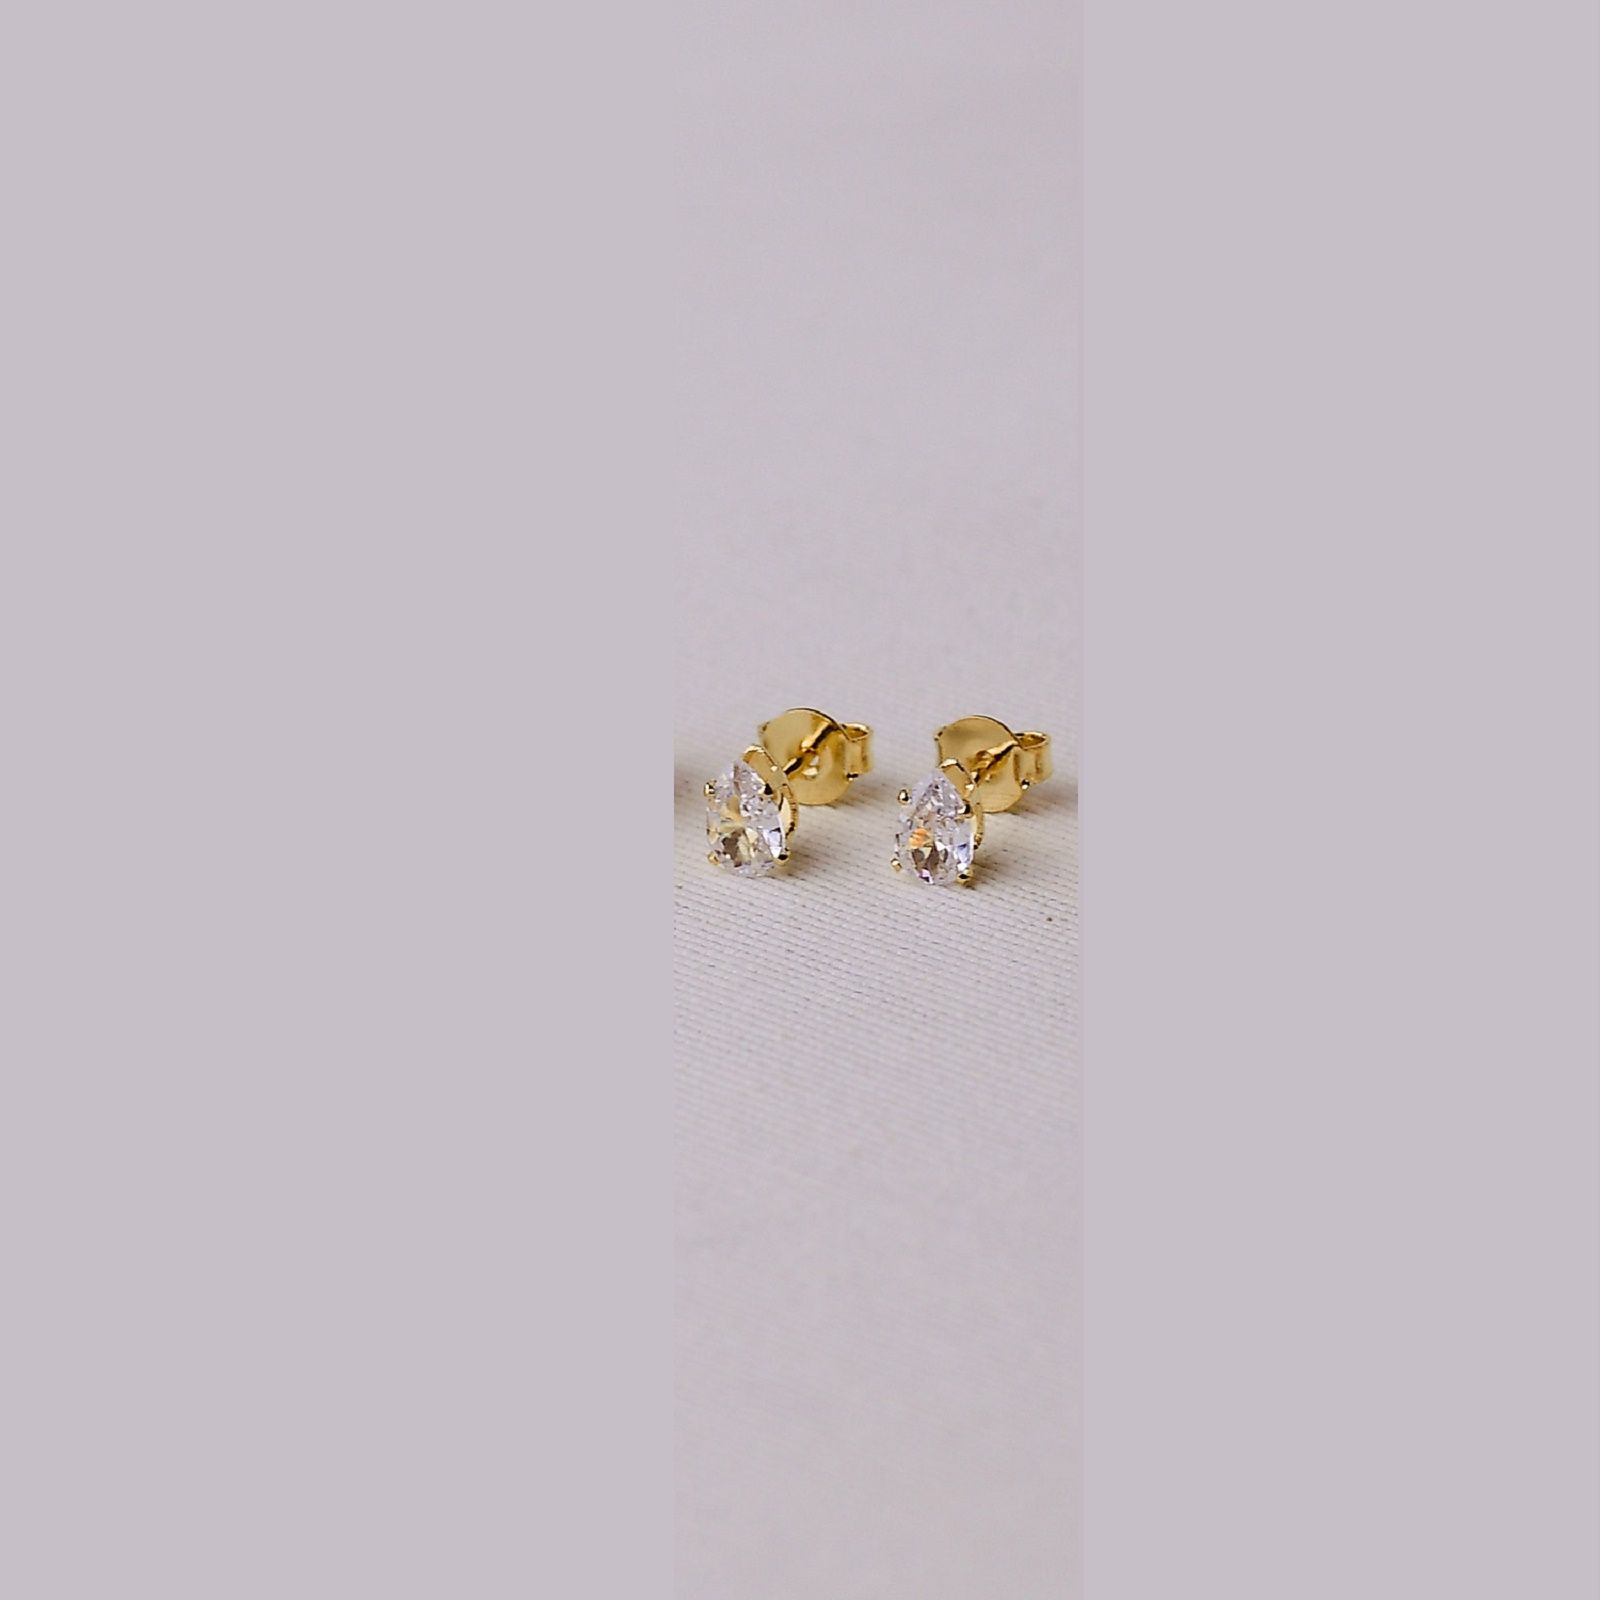 Brinco Dourado Ponto de Luz Gota com Zircônias Cristais 8mm